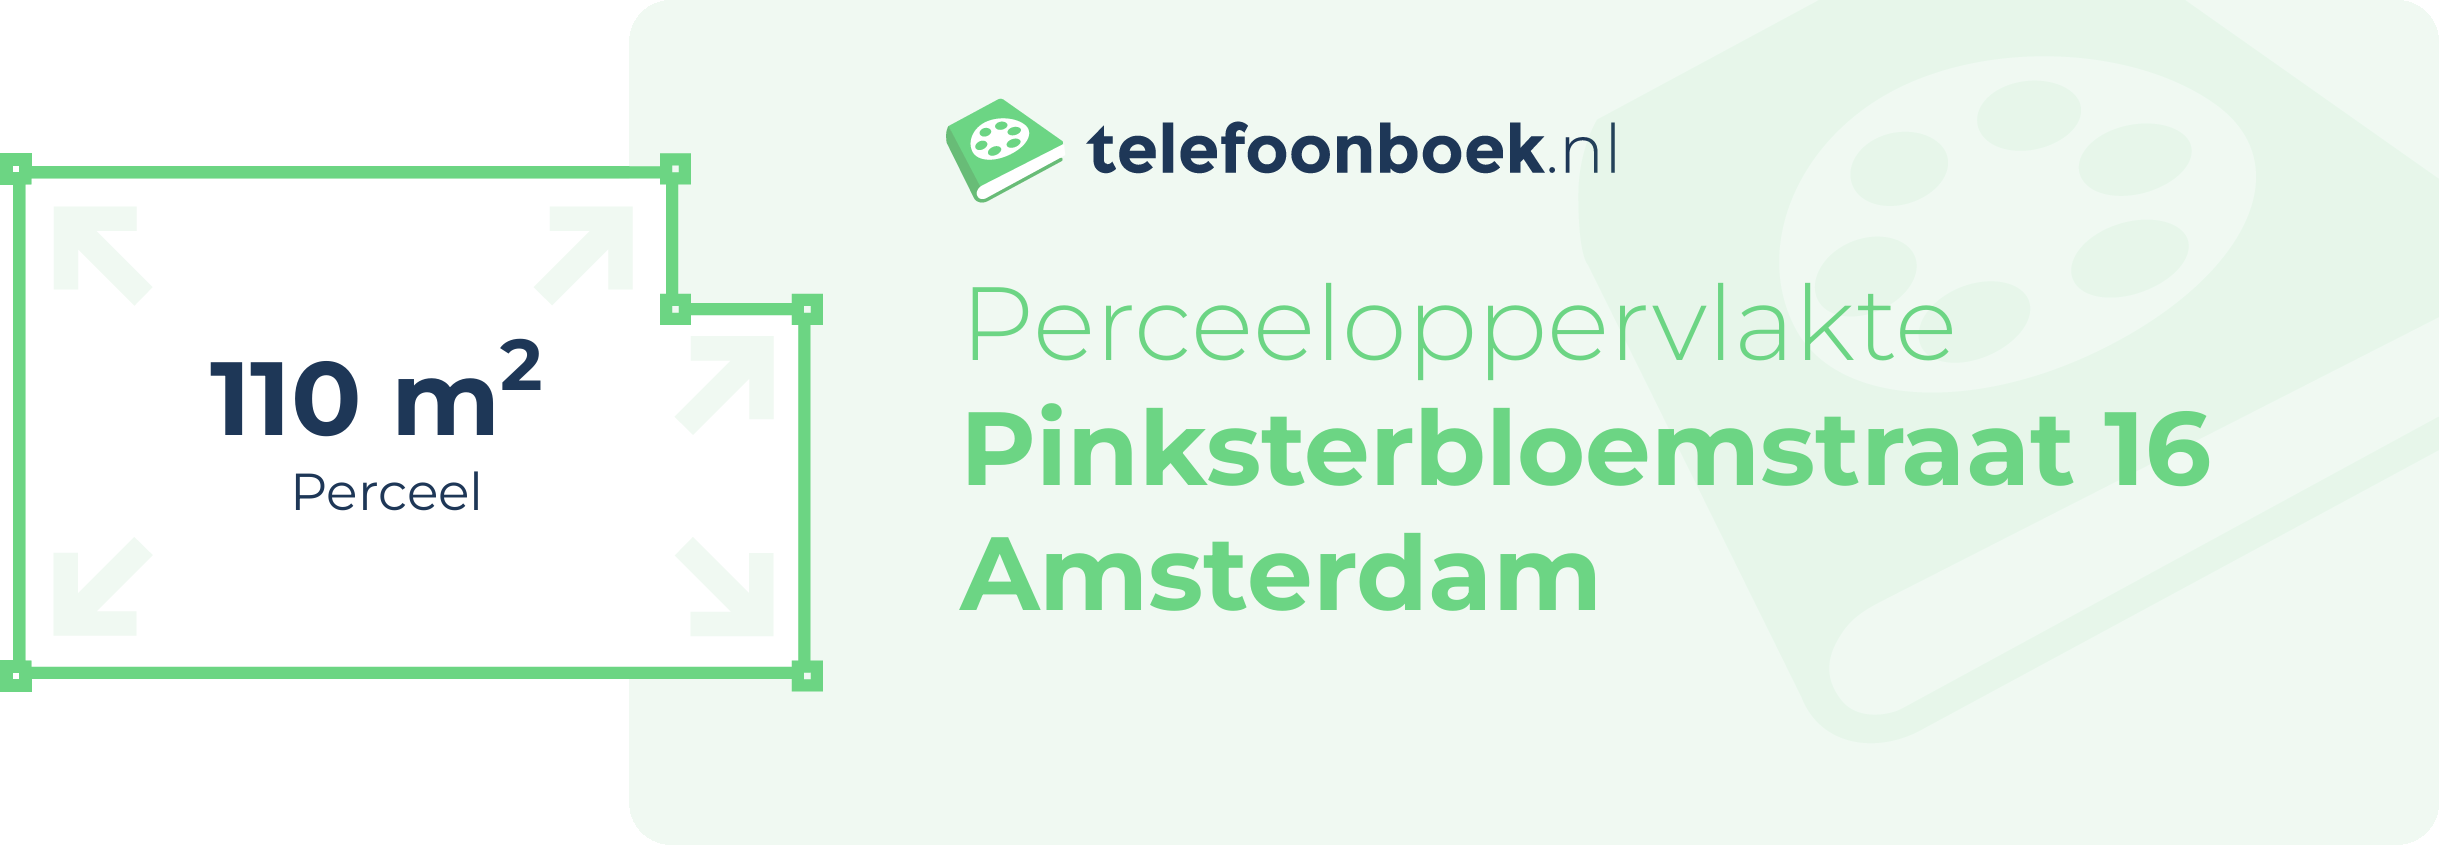 Perceeloppervlakte Pinksterbloemstraat 16 Amsterdam